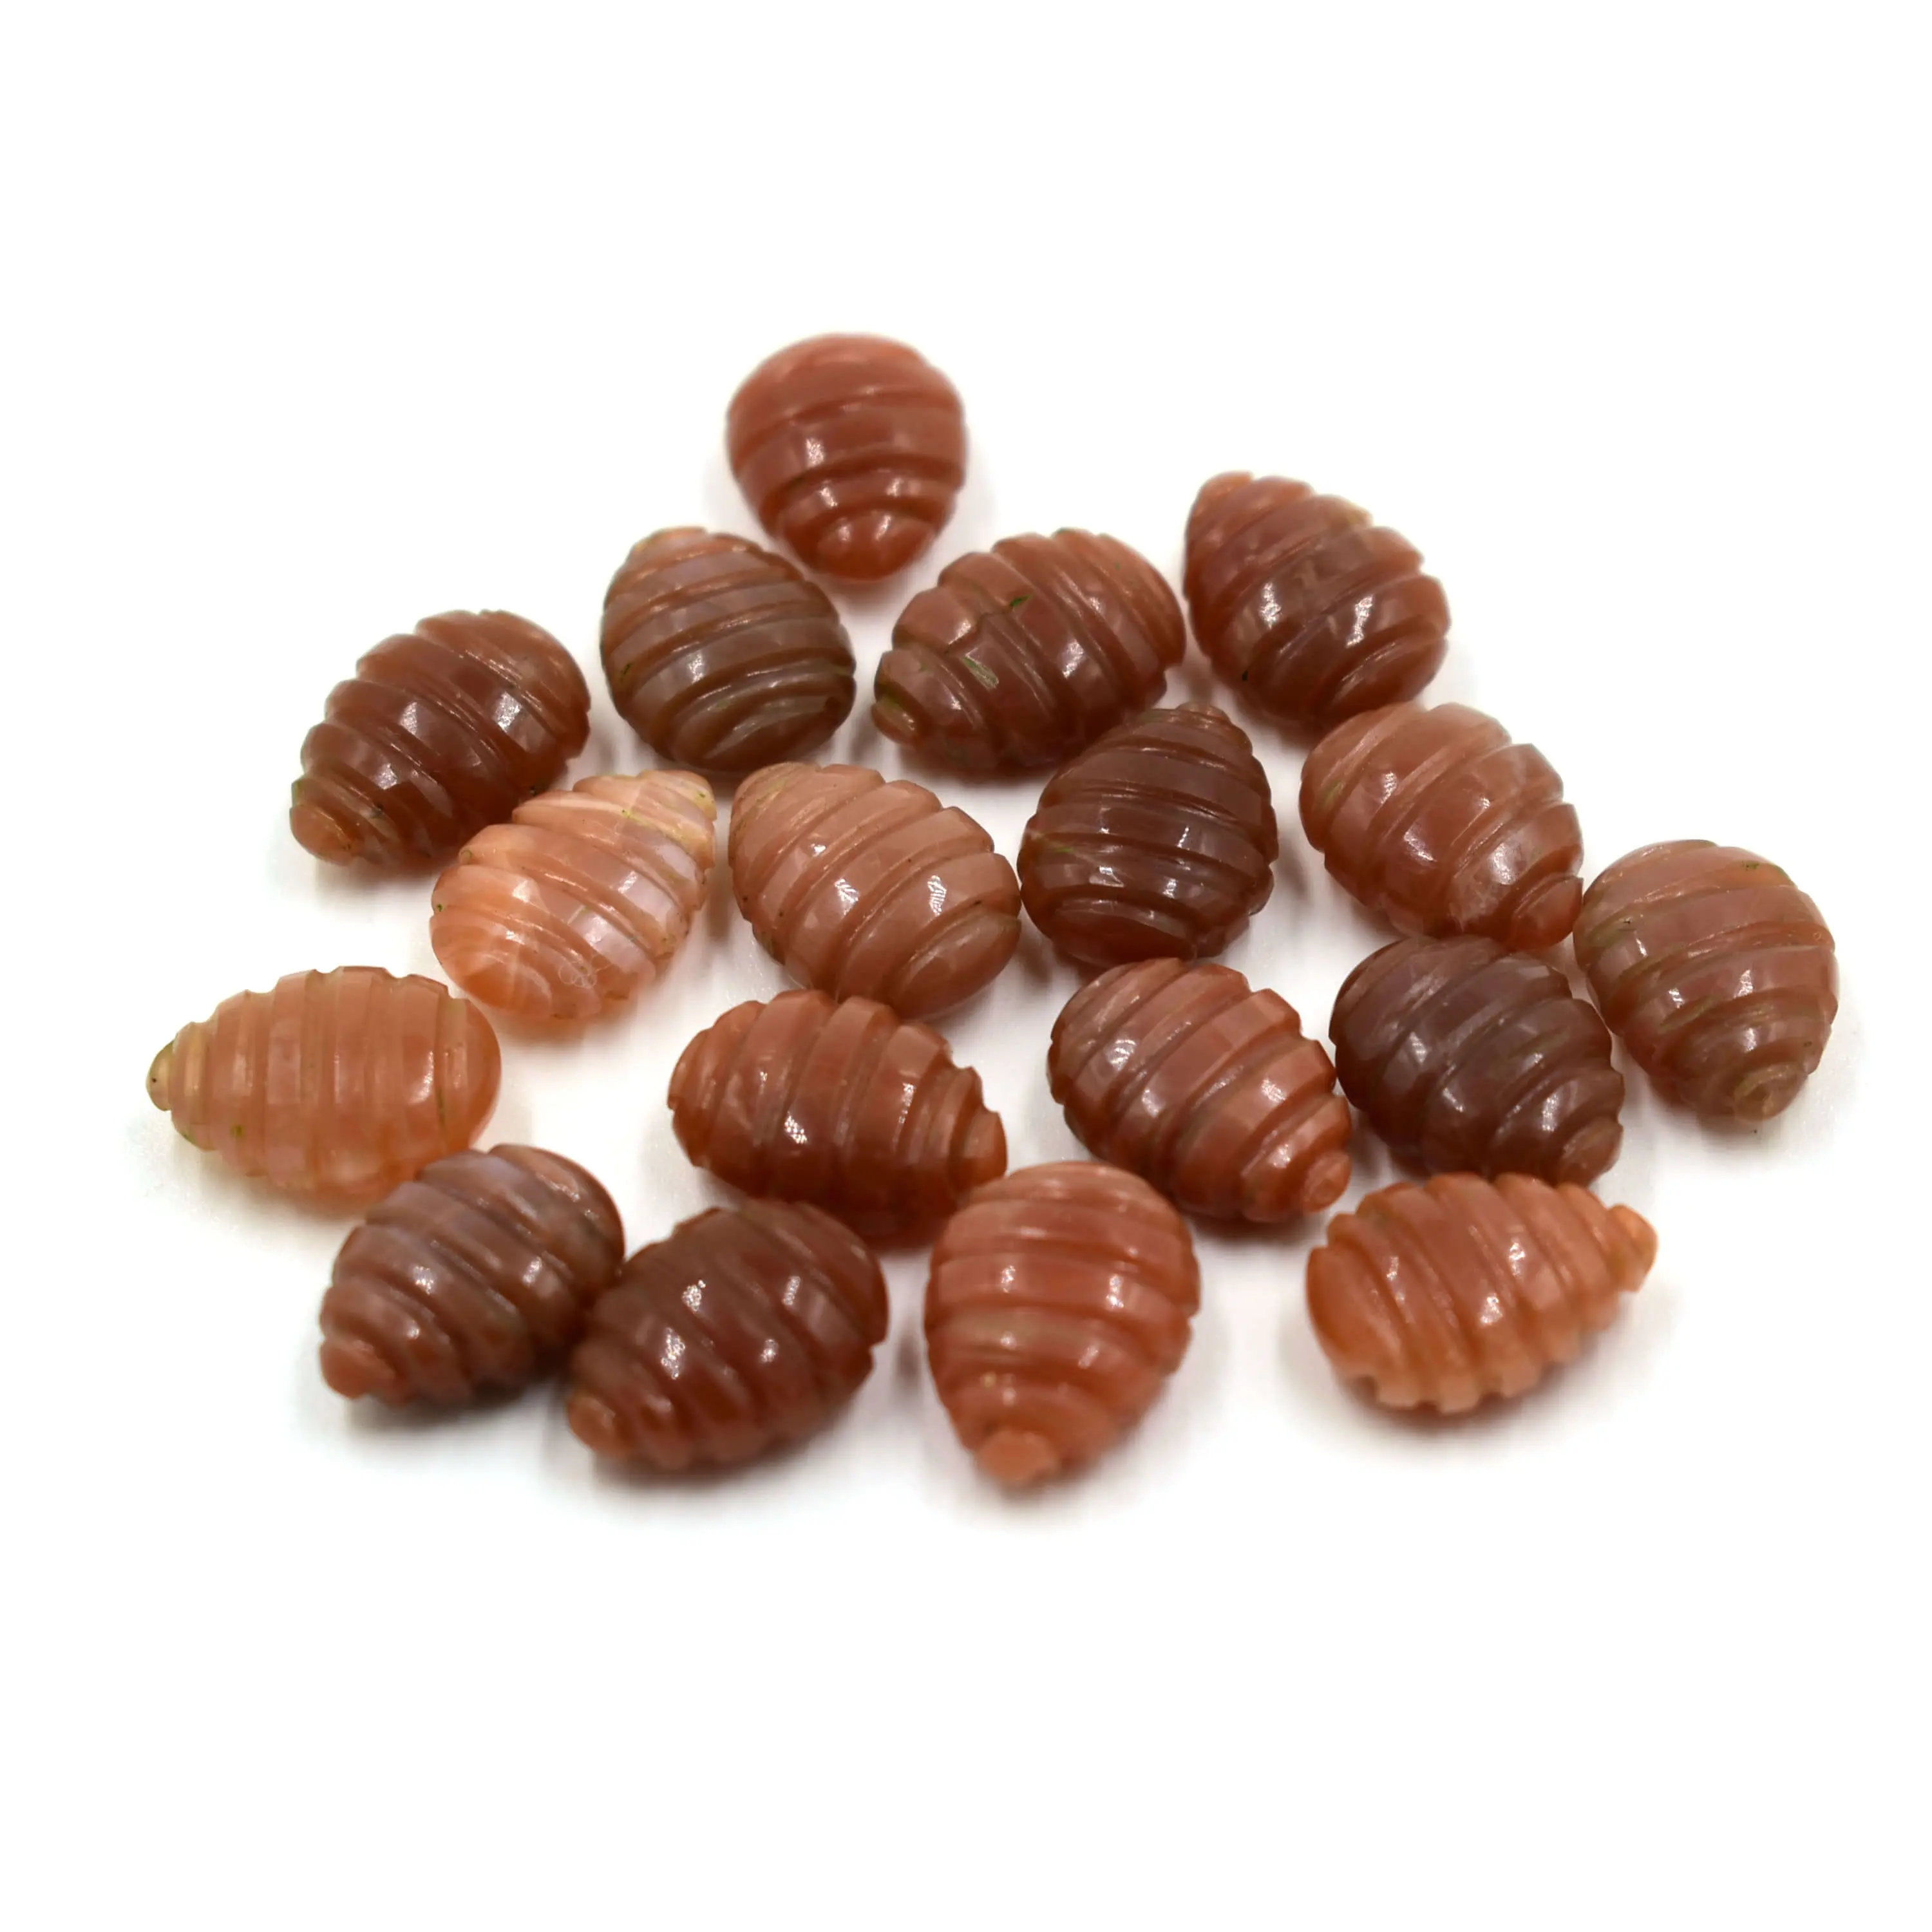 Piedra lunar de chocolate natural en forma de pera, piedras talladas a mano, cabujón liso pulido, piedra preciosa tallada, briolette